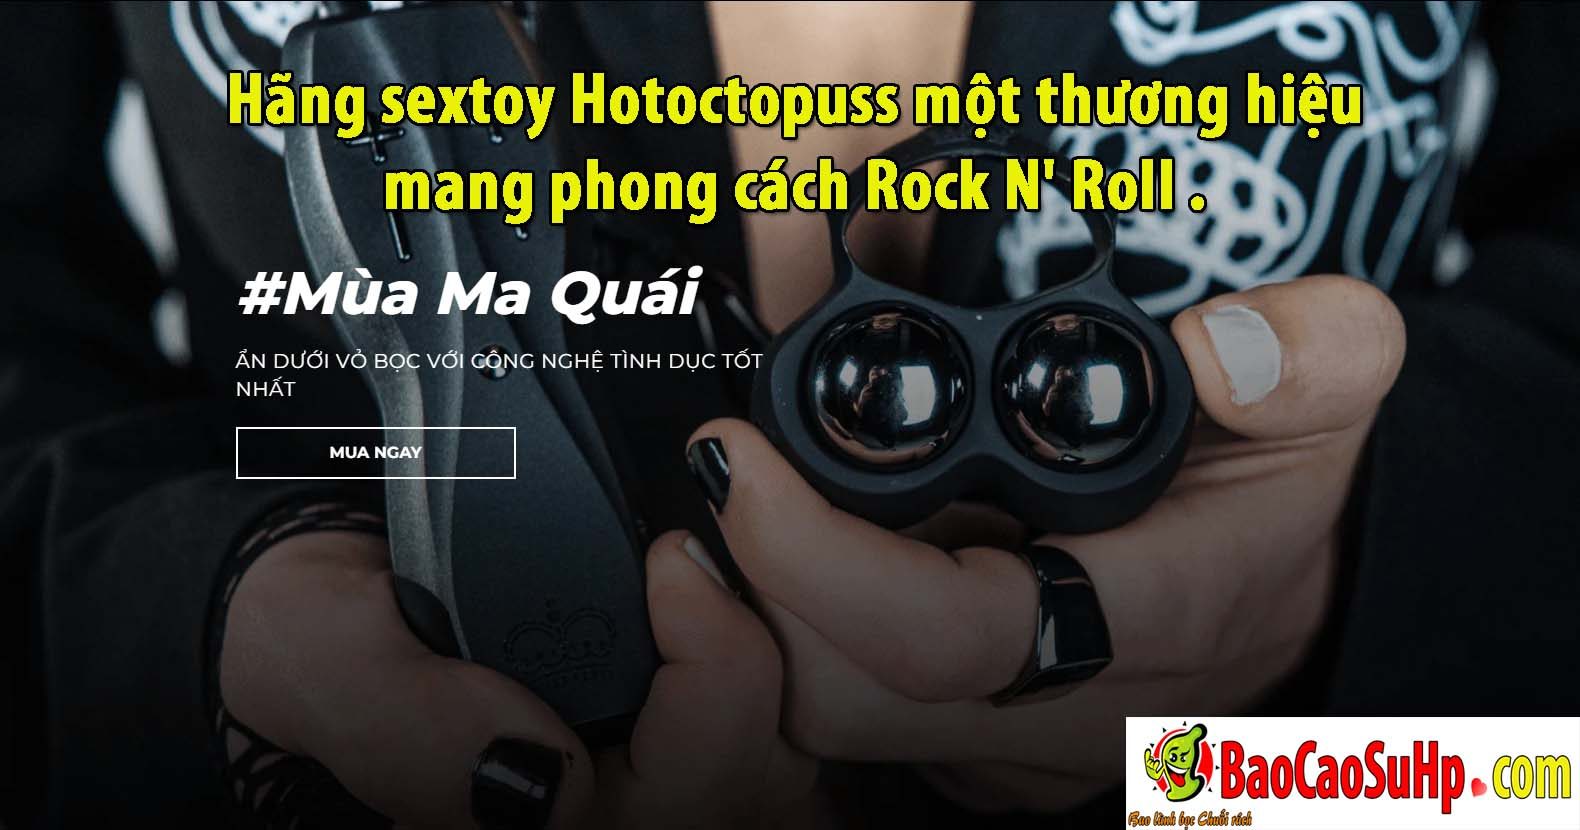 Hãng sextoy Hotoctopuss một thương hiệu mang phong cách Rock N' Roll .